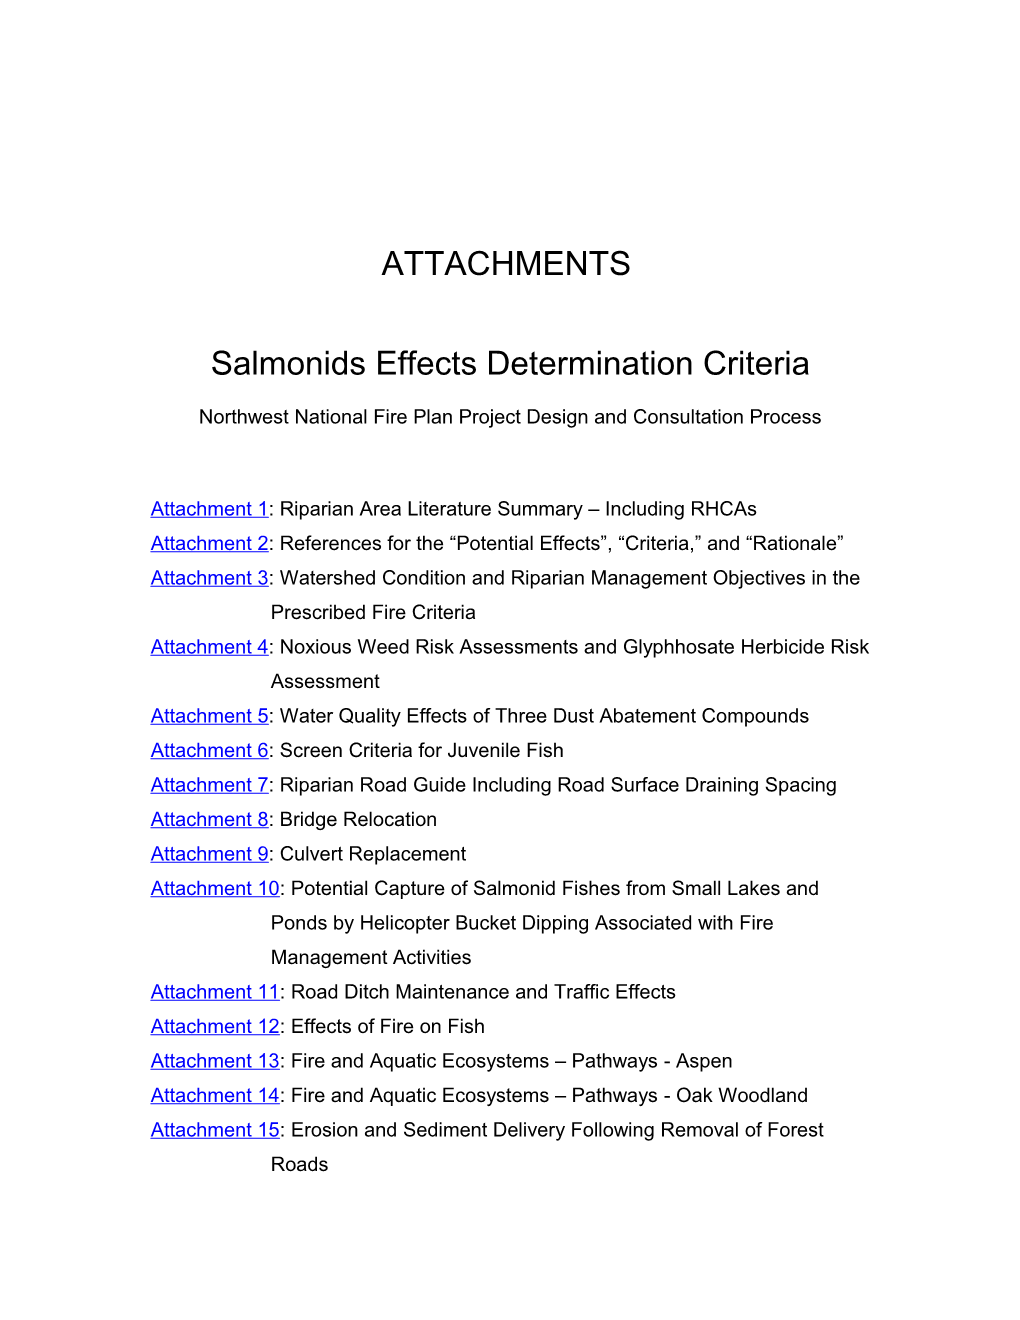 Salmonids Effects Determination Criteria